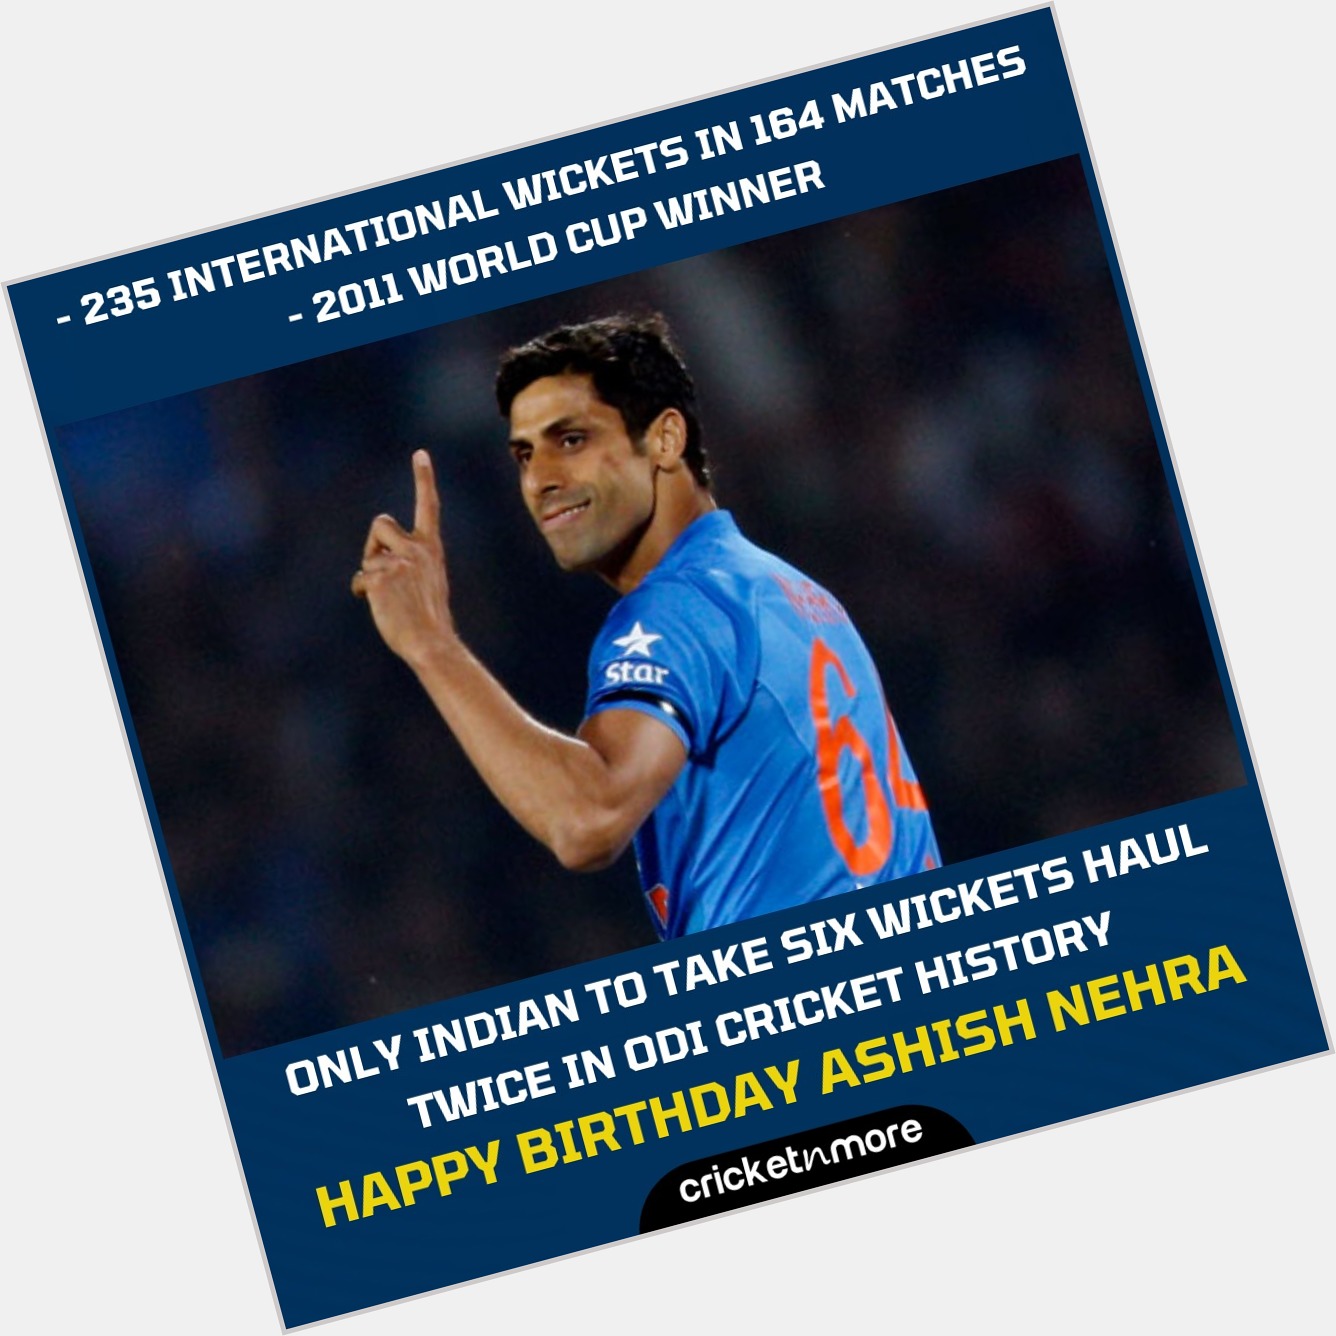 Happy Birthday, Ashish Nehra!
.
.    